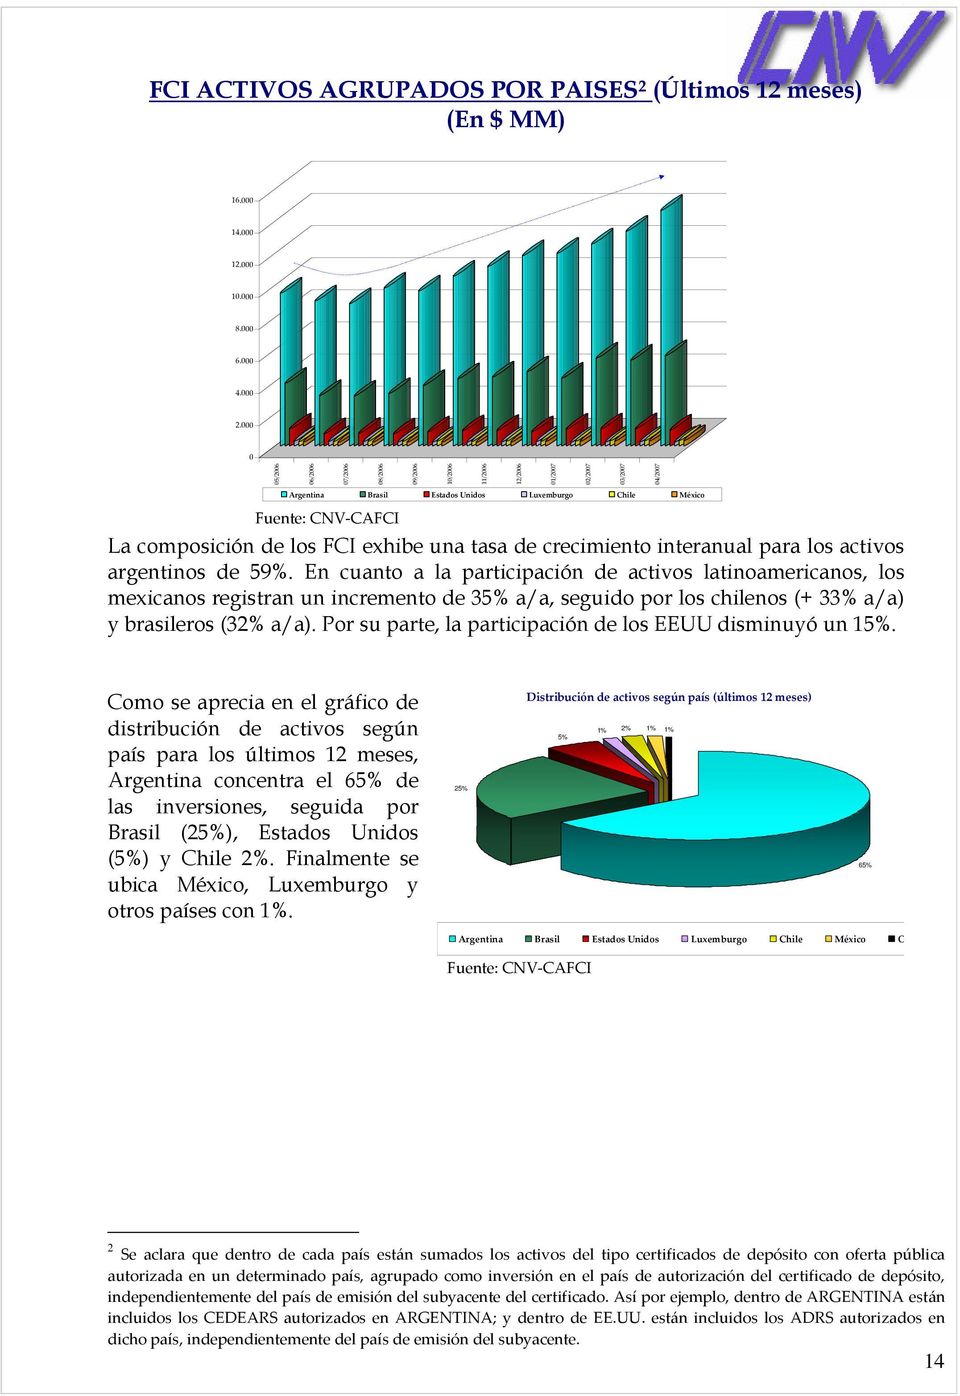 FCI exhibe una tasa de crecimiento interanual para los activos argentinos de 59%.